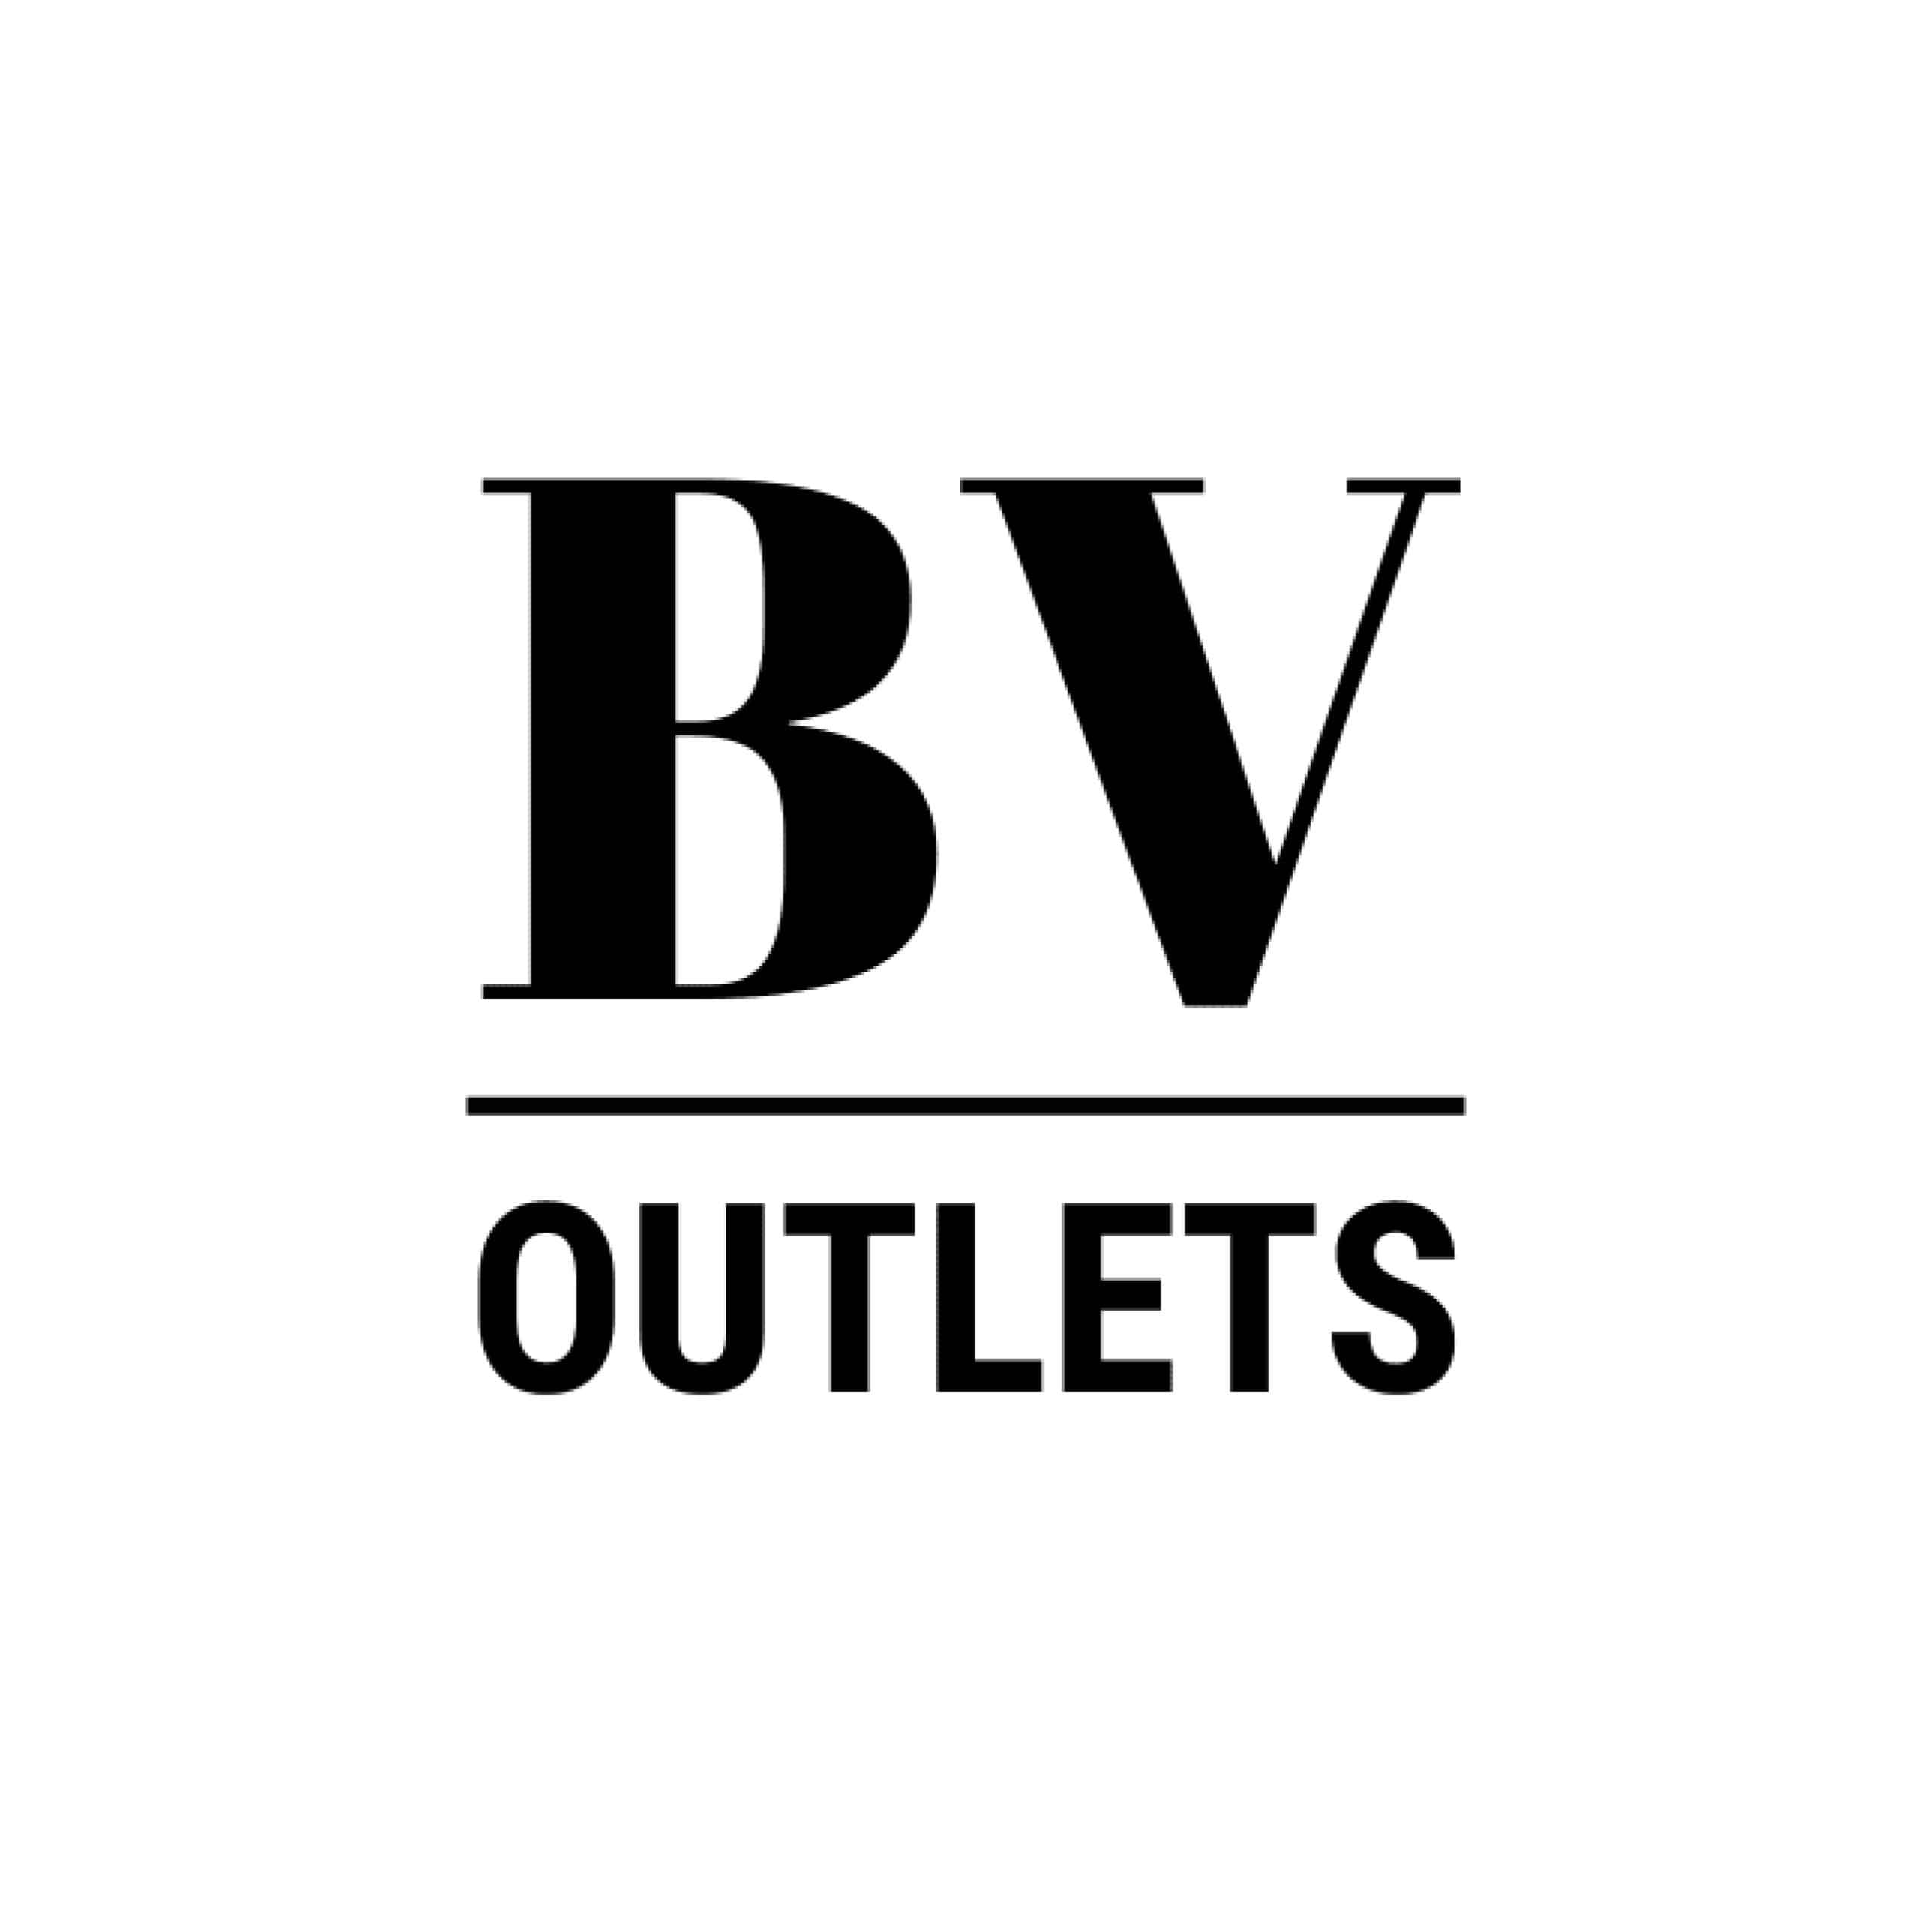 bv outlets logo in black